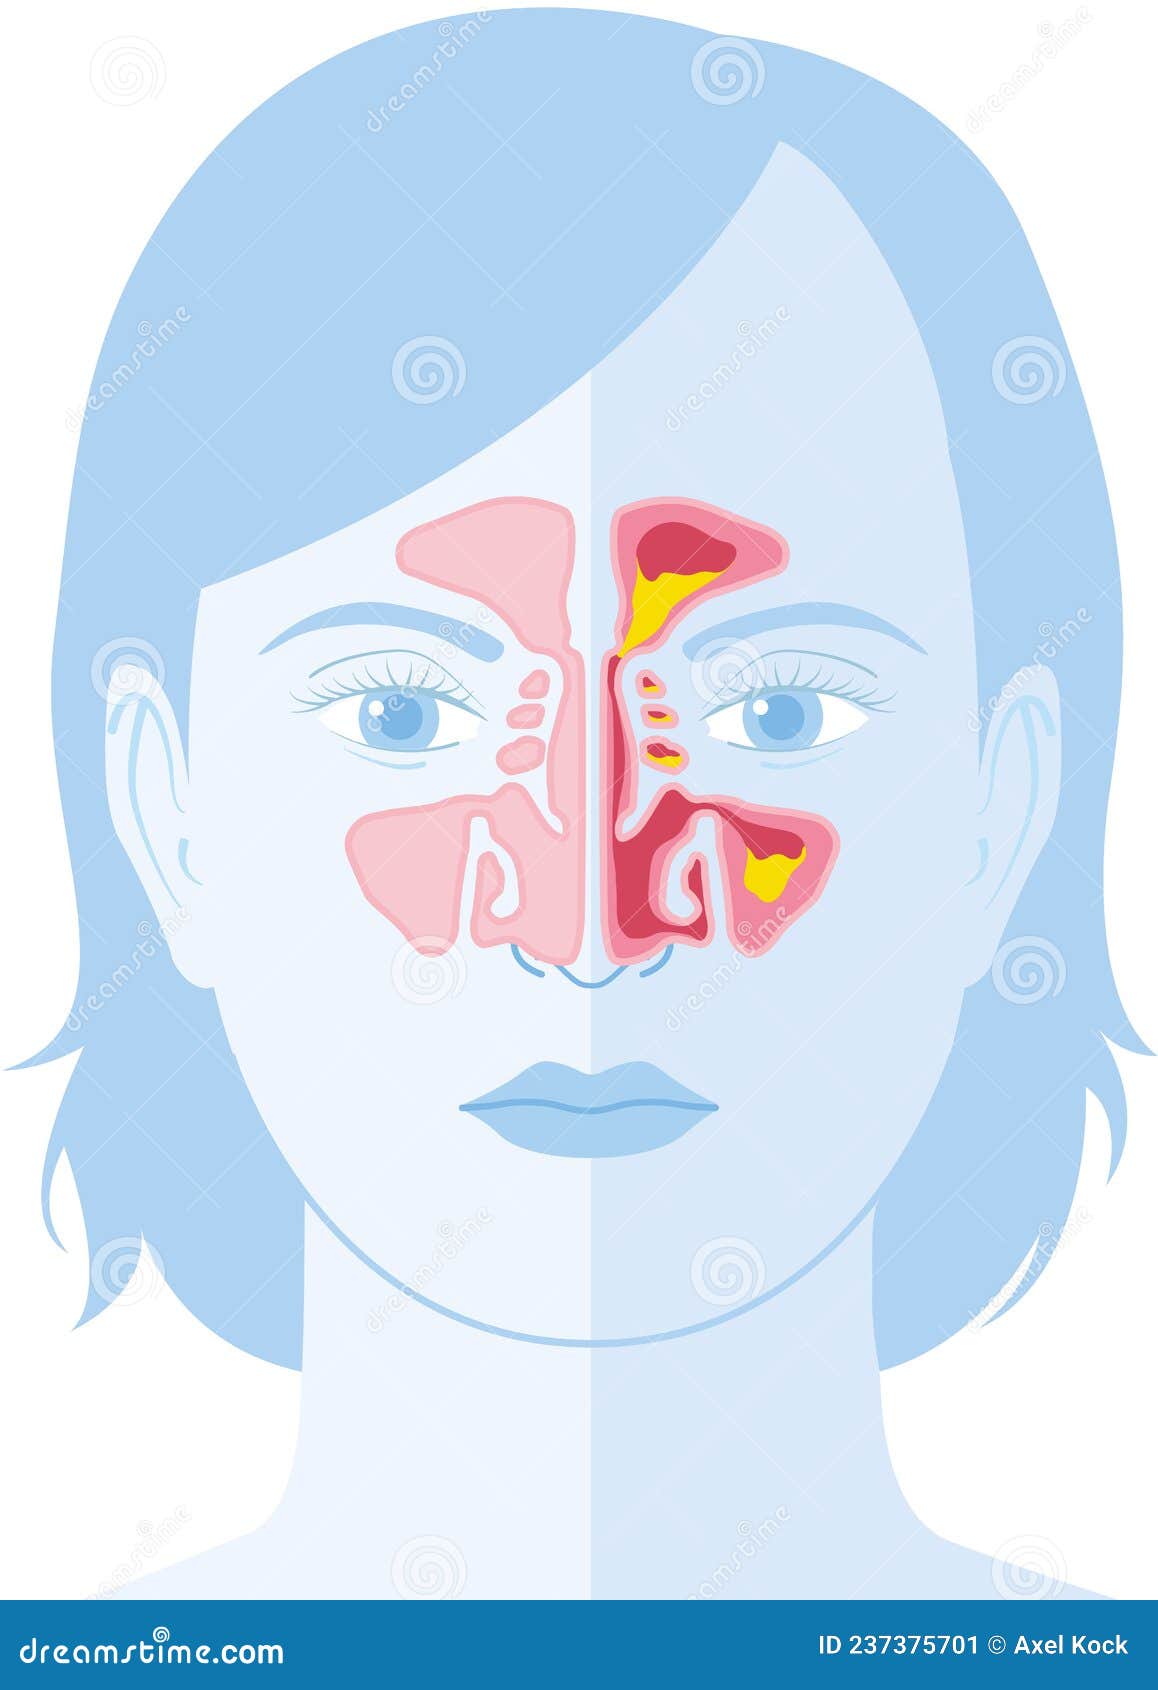 Sinusitis Vector Illustration Stock Illustration Illustration Of